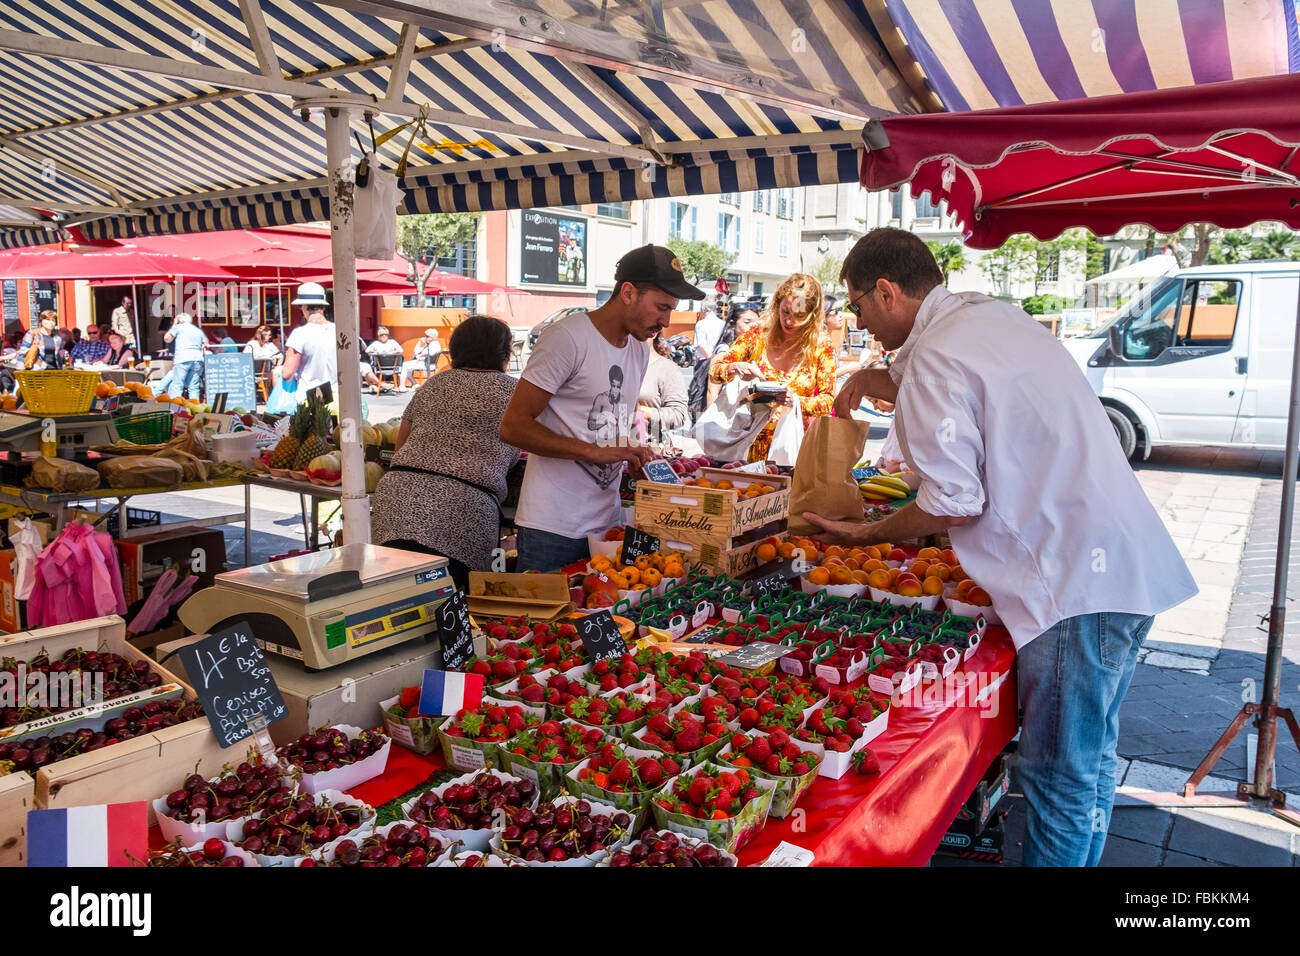 people market france trader vegetable fruit stalls Stock Photo